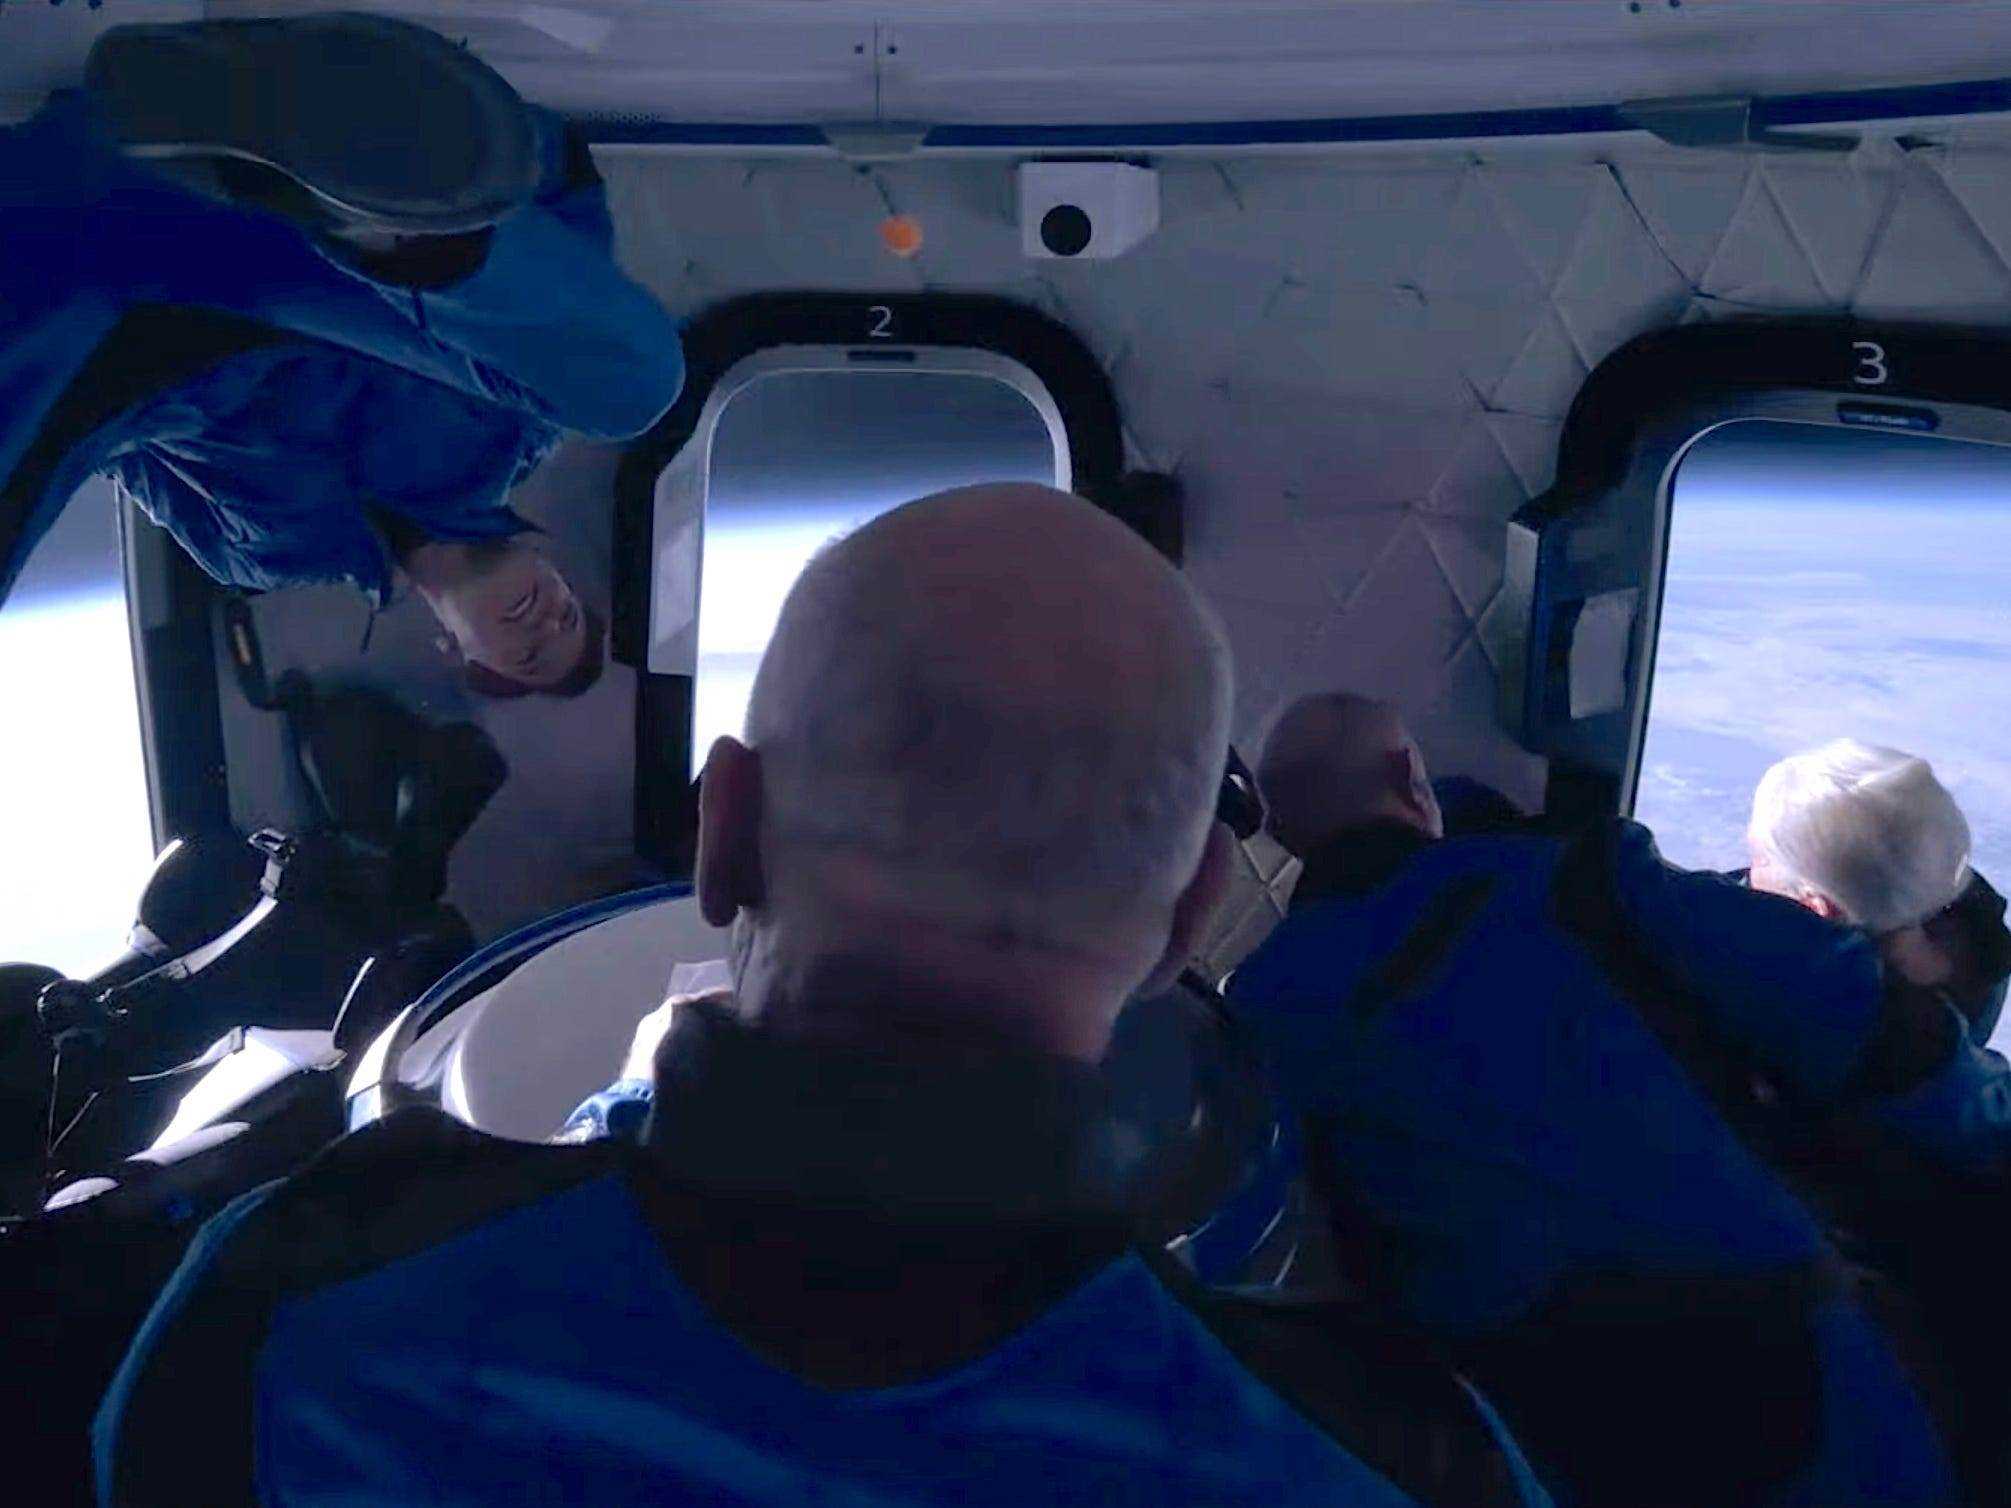 Jeff Bezos und drei andere Passagiere in Overalls schweben im Hintergrund um die Erde der Raumschiffkabine herum